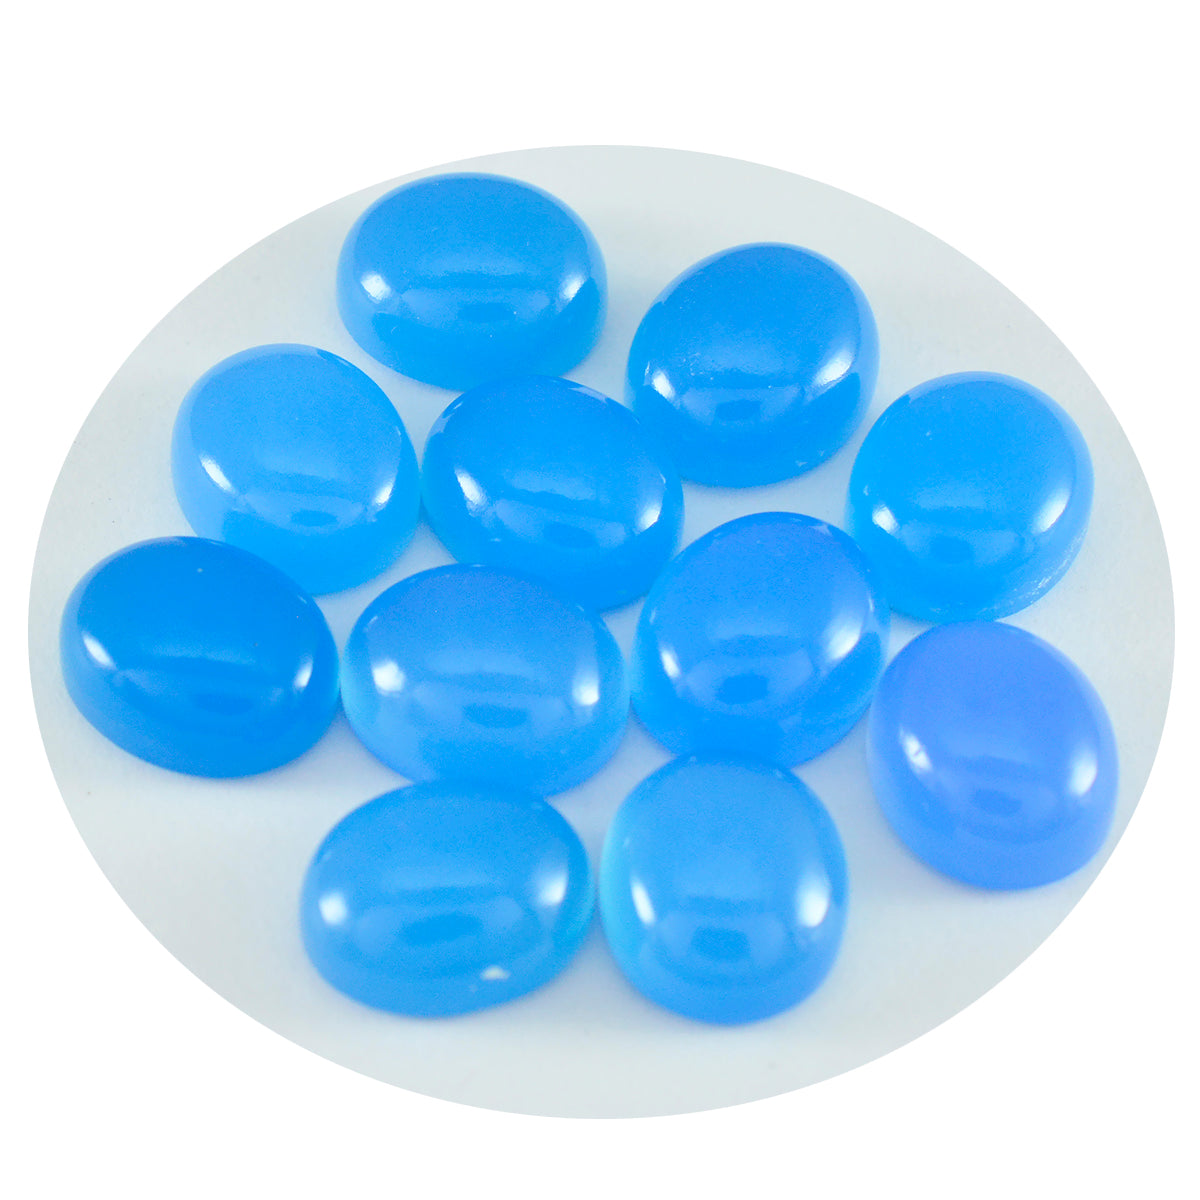 Riyogems 1 Stück blauer Chalcedon-Cabochon, 5 x 7 mm, ovale Form, Edelstein von erstaunlicher Qualität